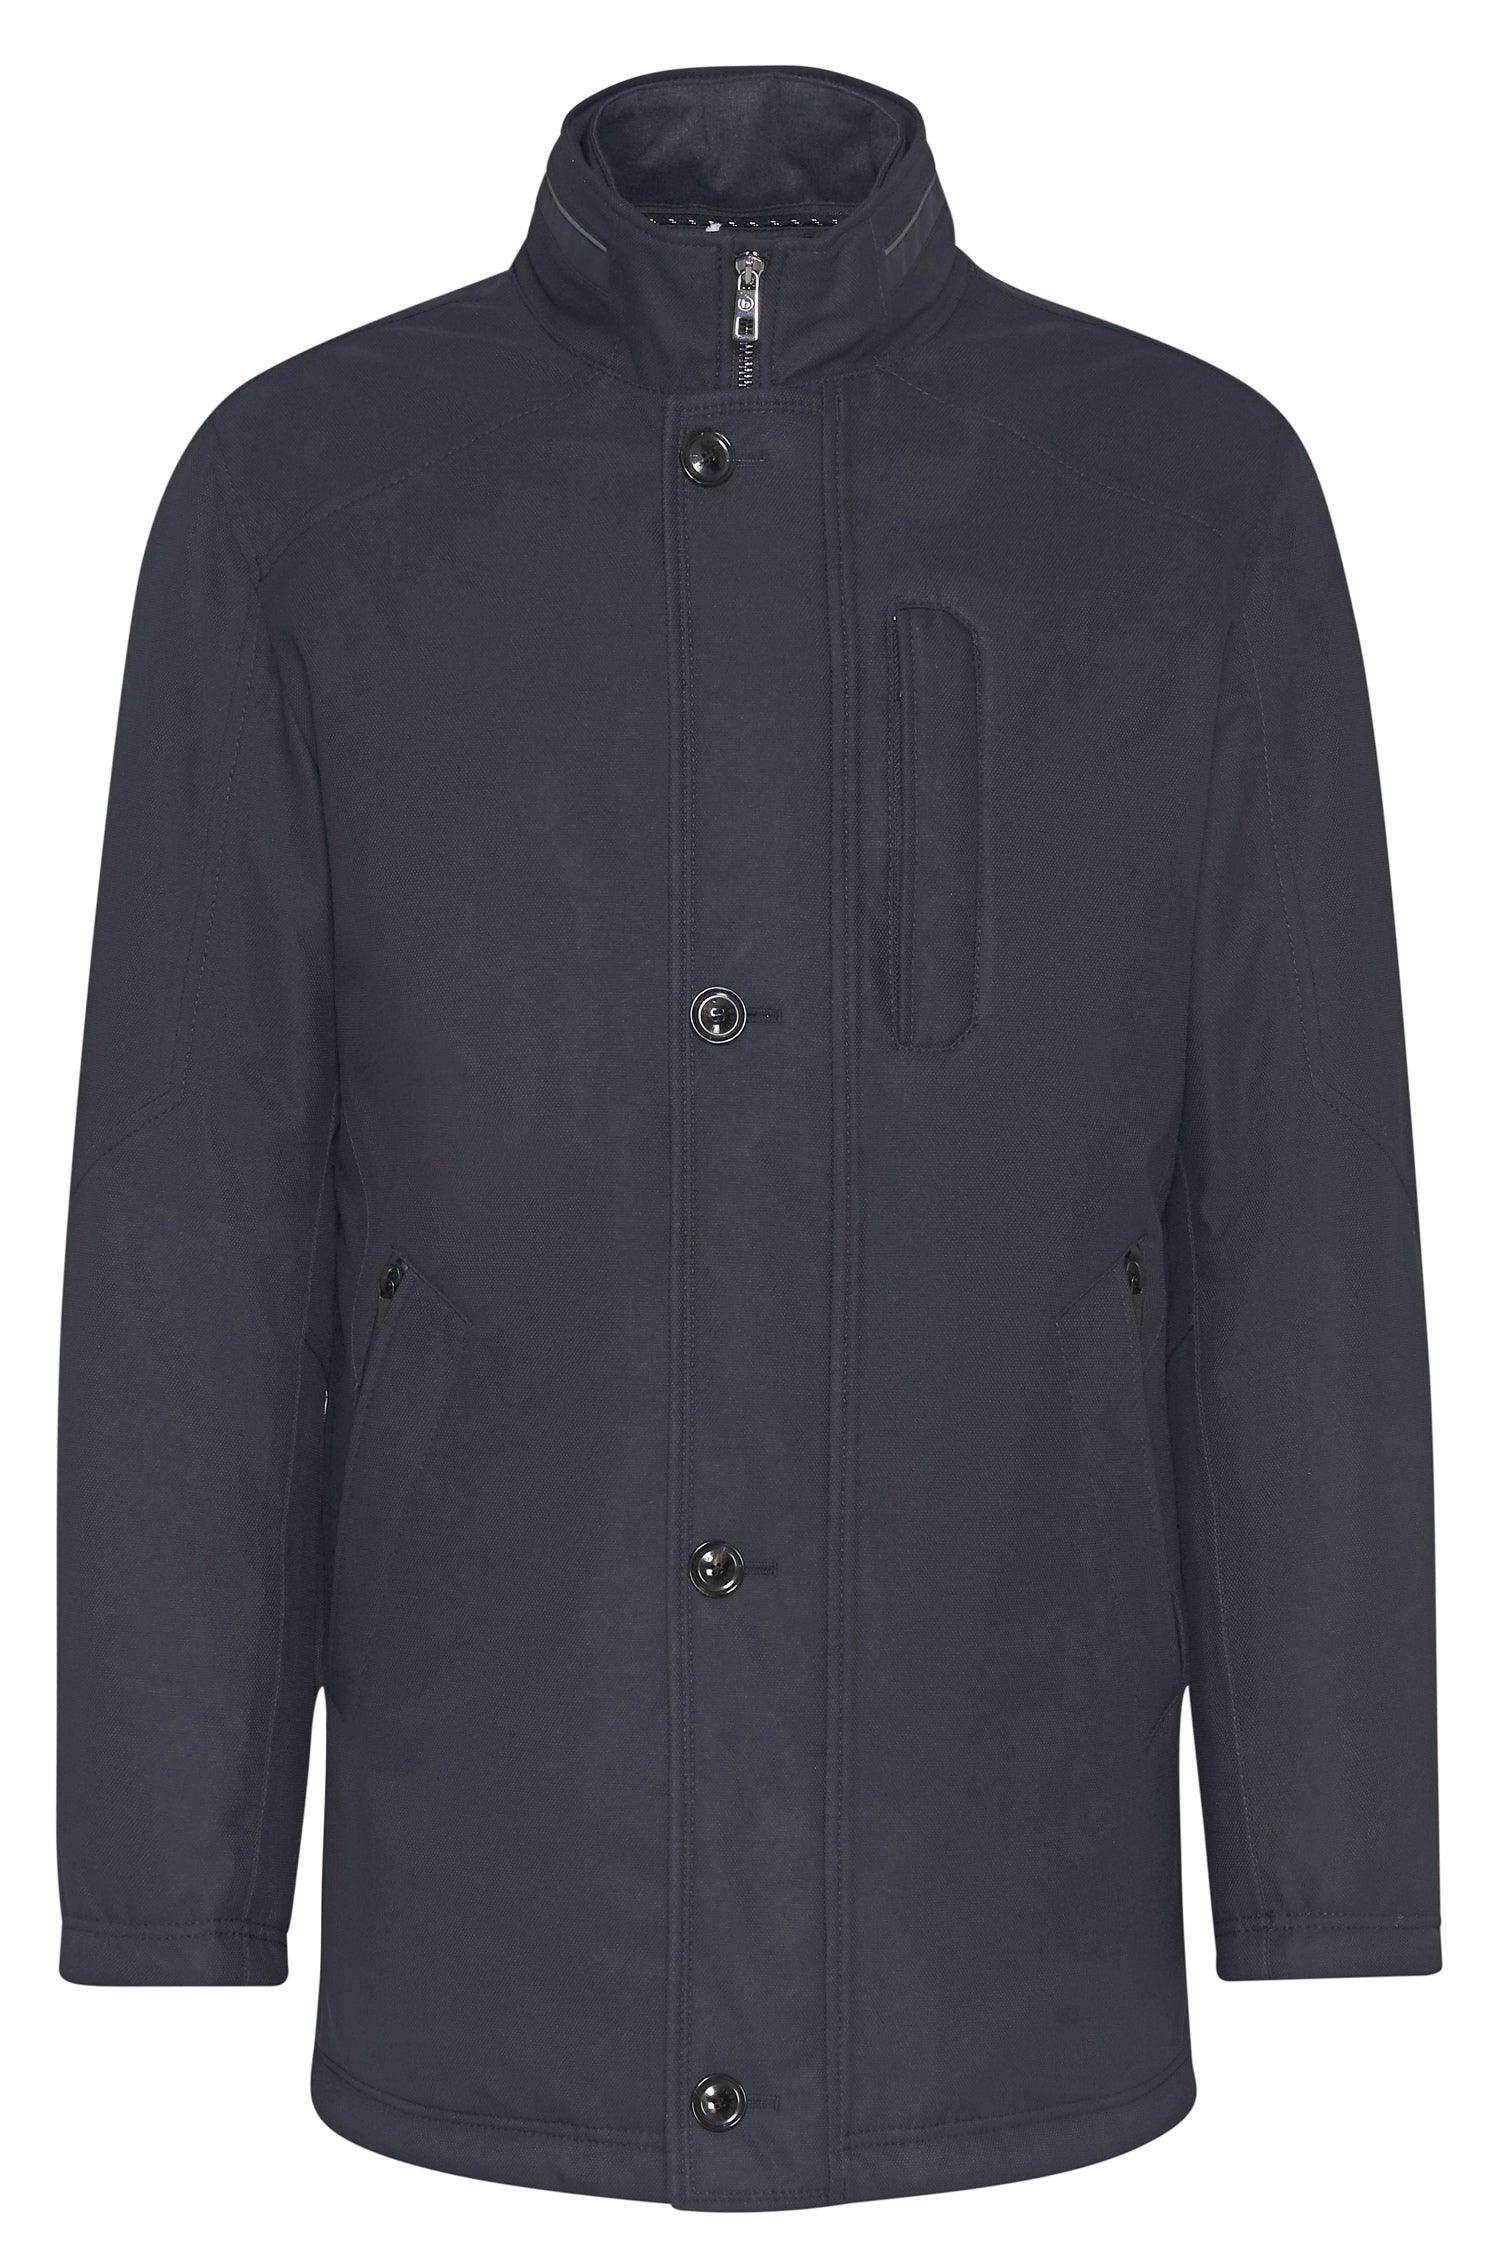 874128-Casual Jacket Black - Harrys for Menswear